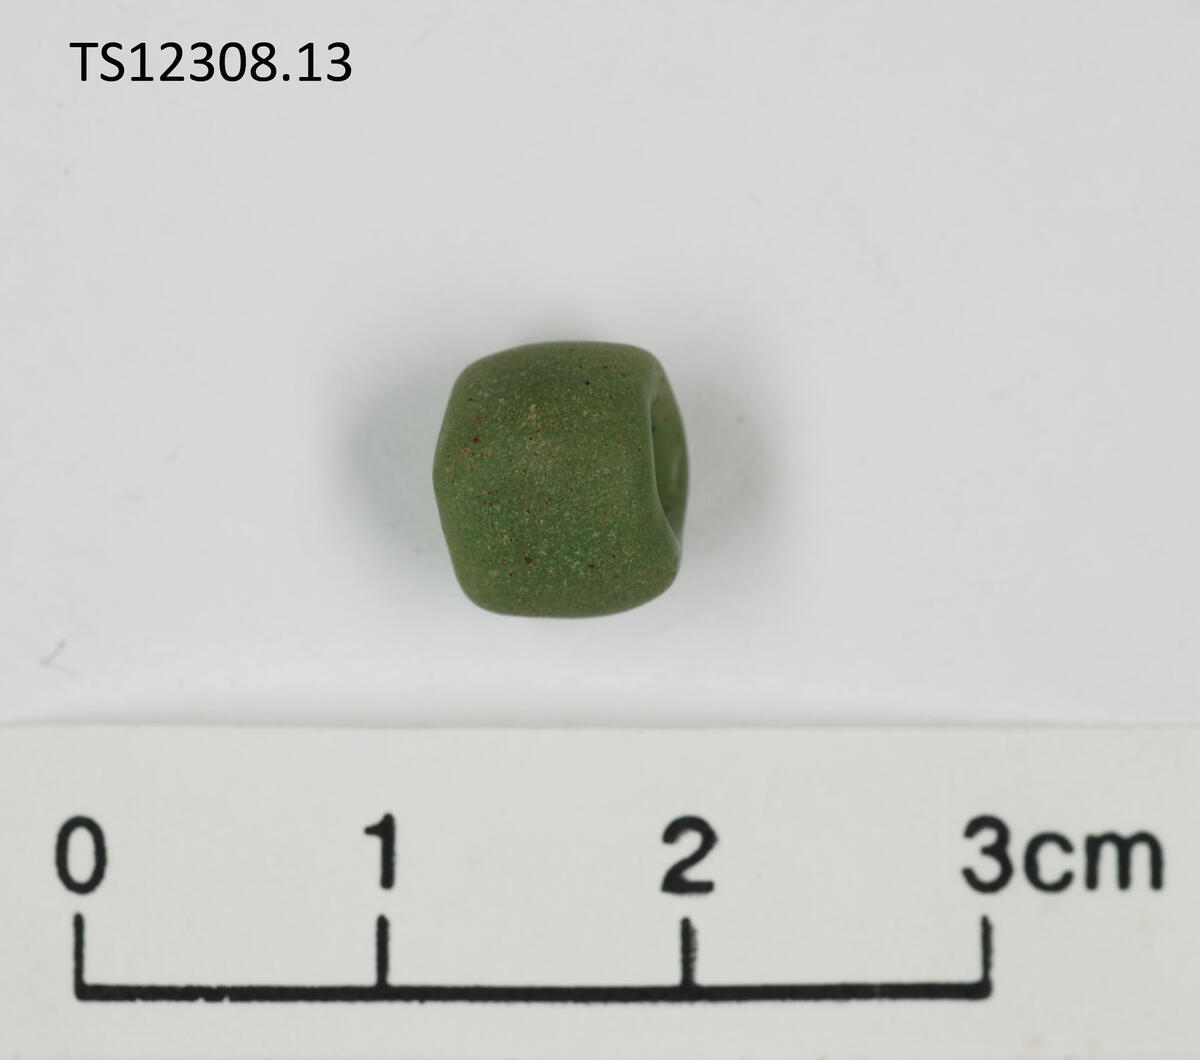 1 stk perle av glass. Grønn. 0,9 cm i diameter, 0,7 cm tykk.